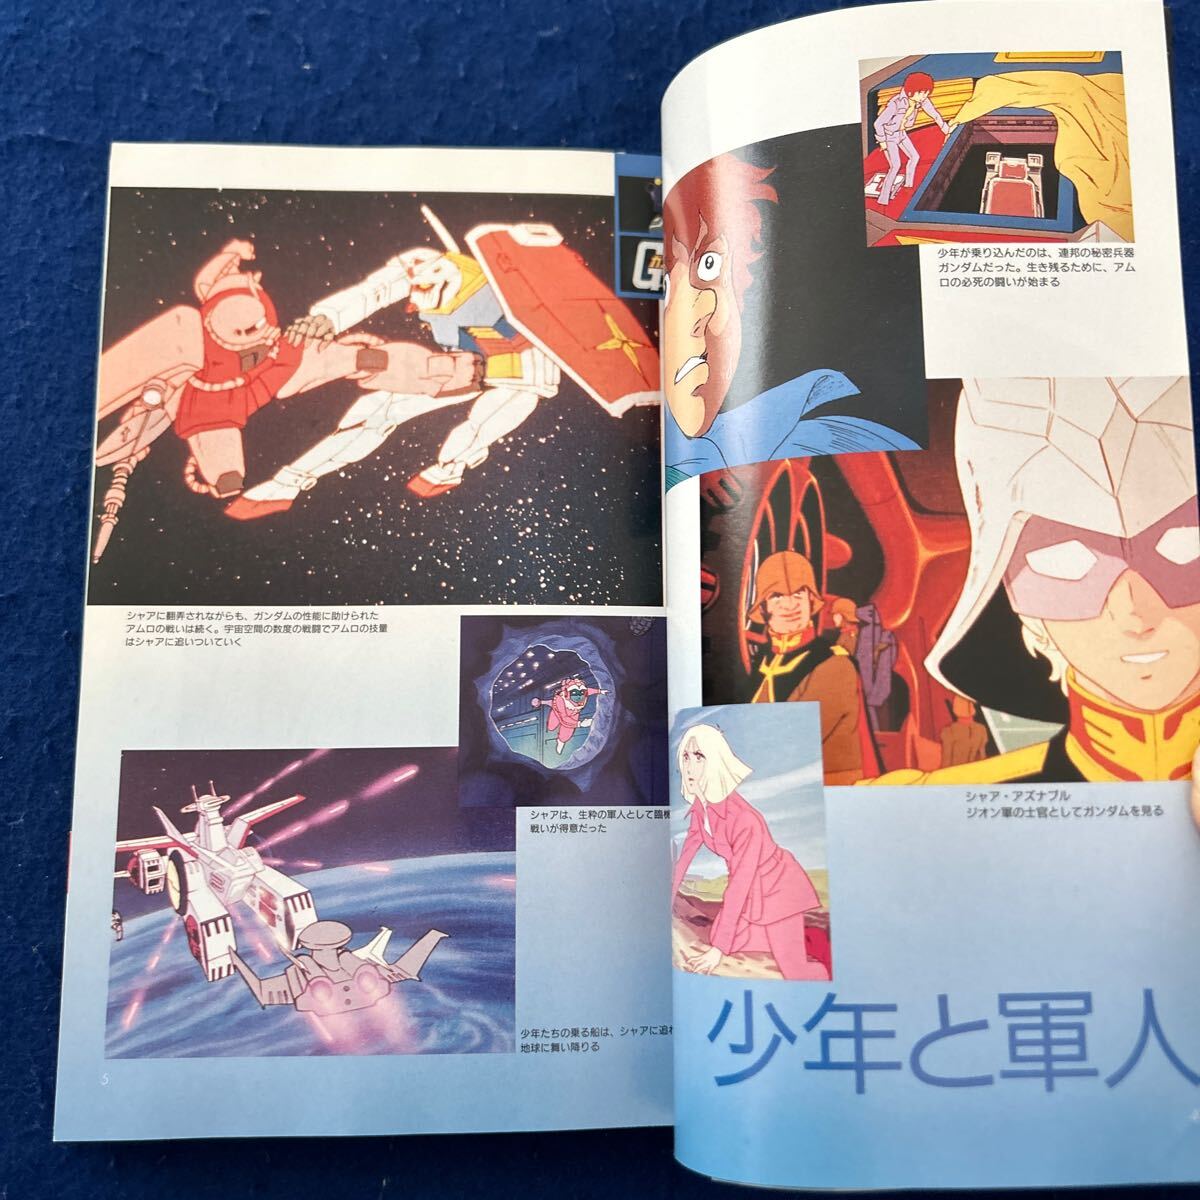  Mobile Suit Gundam * car avsamro* anime k special editing * telecast 20 anniversary commemoration plan * work guide * novel 